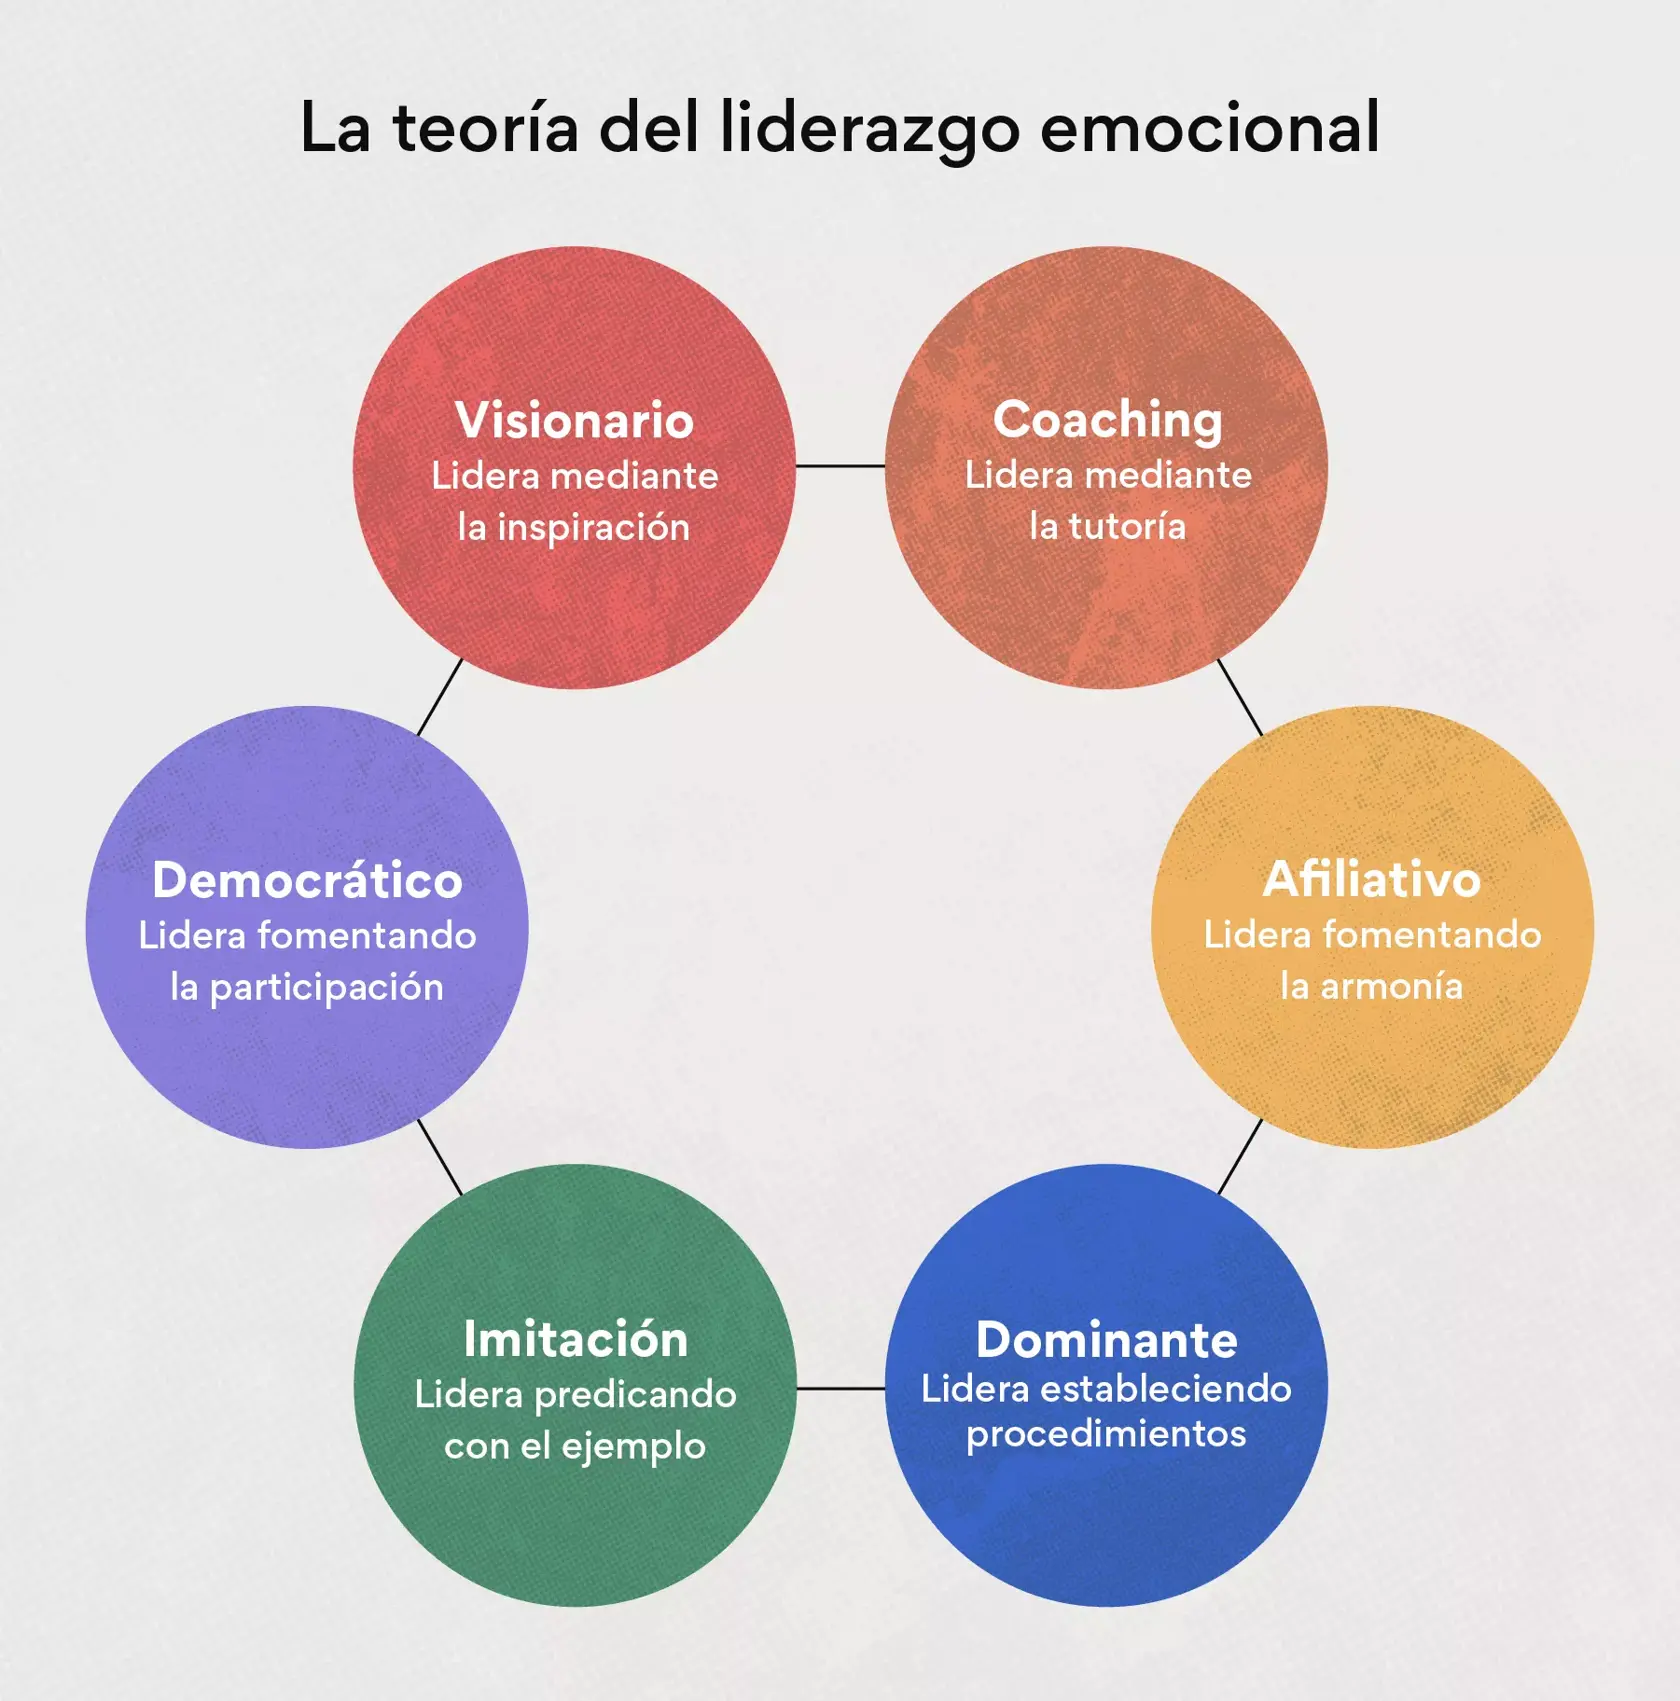 La teoría del liderazgo emocional